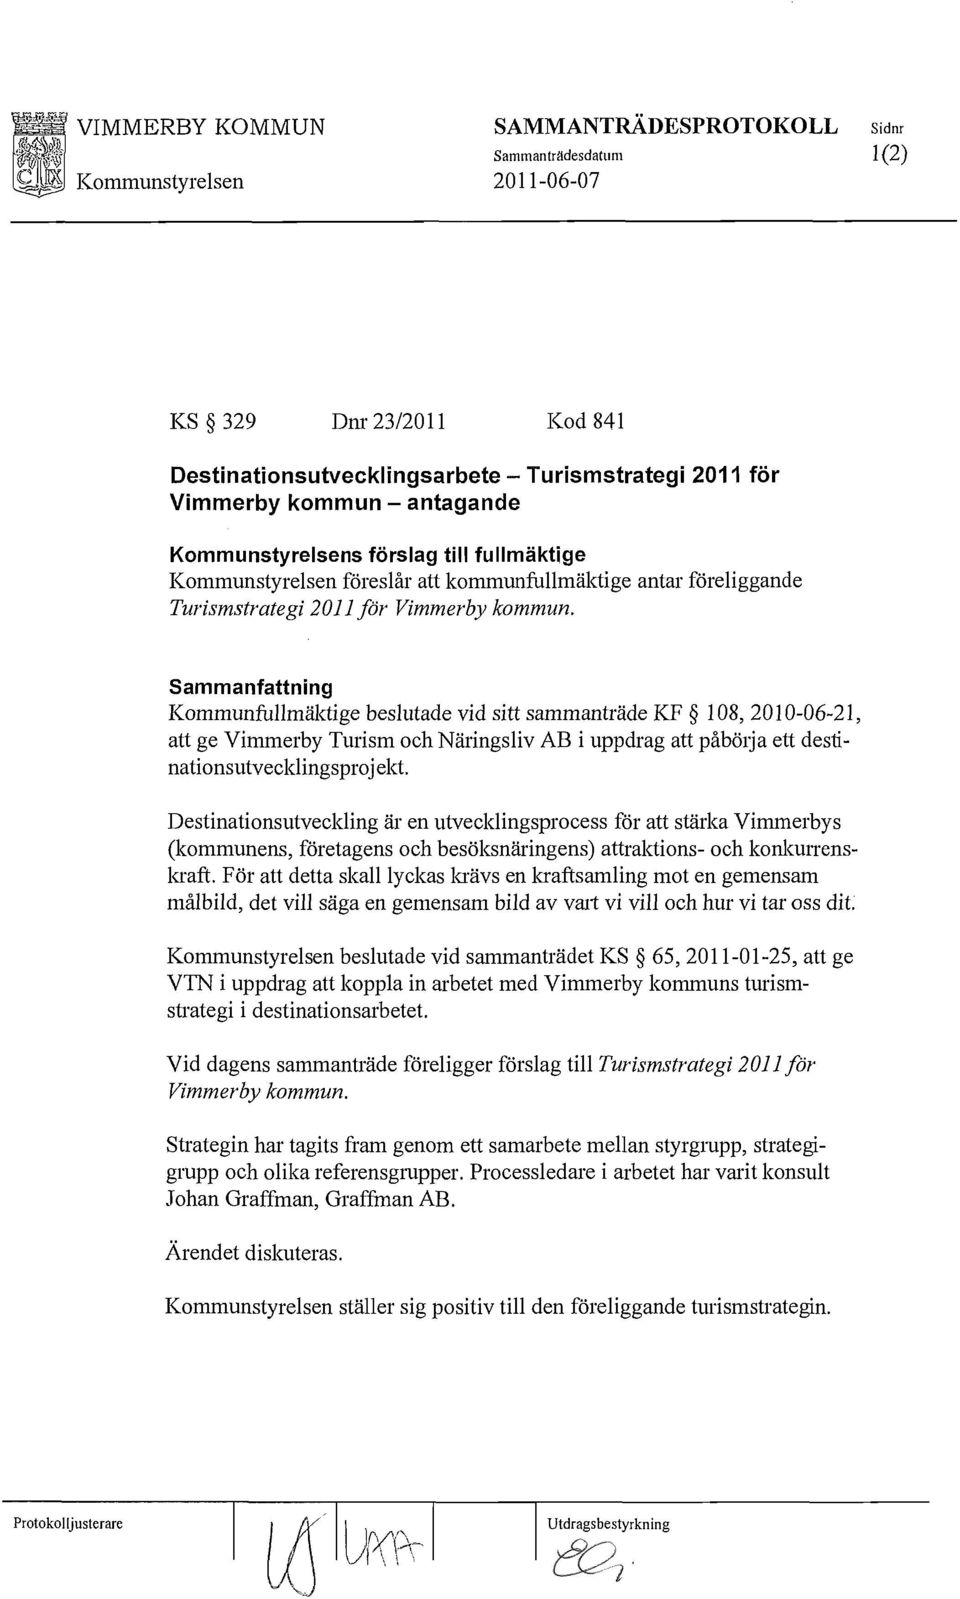 Sammanfattning Kommunfullmäktige beslutade vid sitt sammanträde KF 108,2010-06-21, att ge Vimmerby Turism och Näringsliv AB i uppdrag att påbölja ett destinationsutvecklingsprojekt.